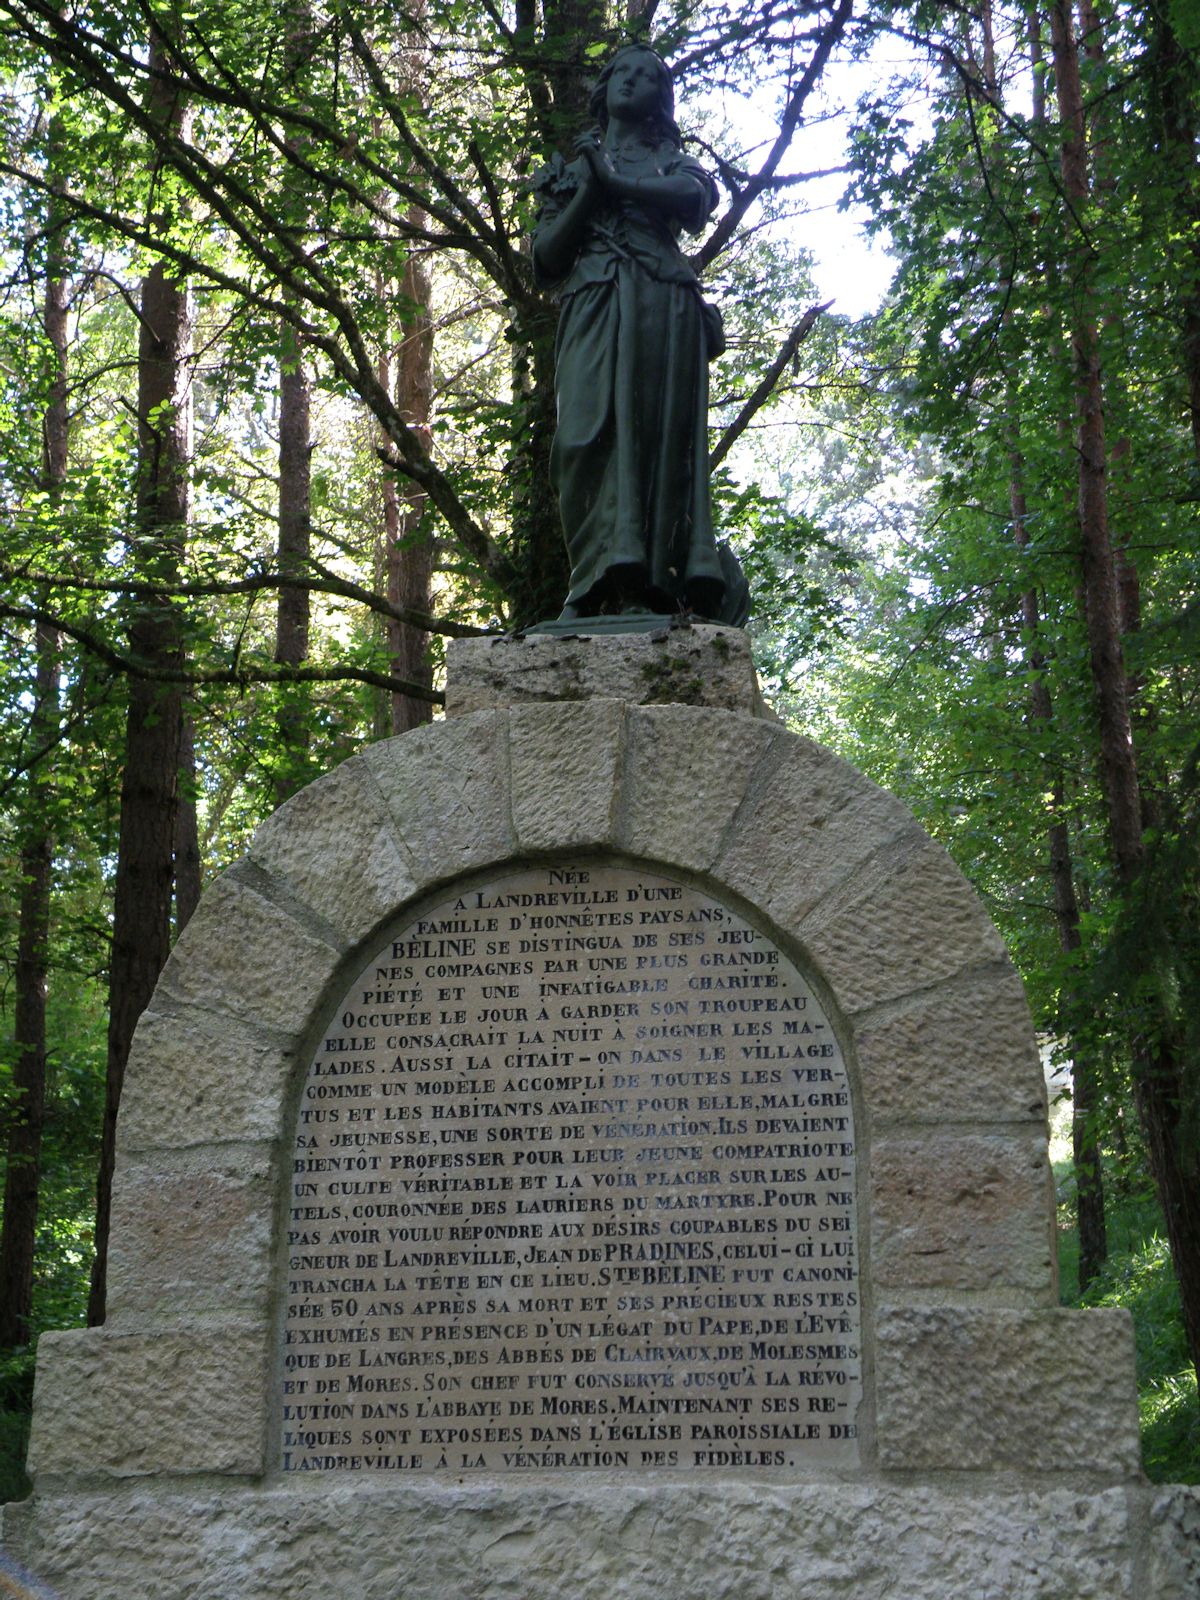 Statue und Inschrift am Brunnen nahe Landreville